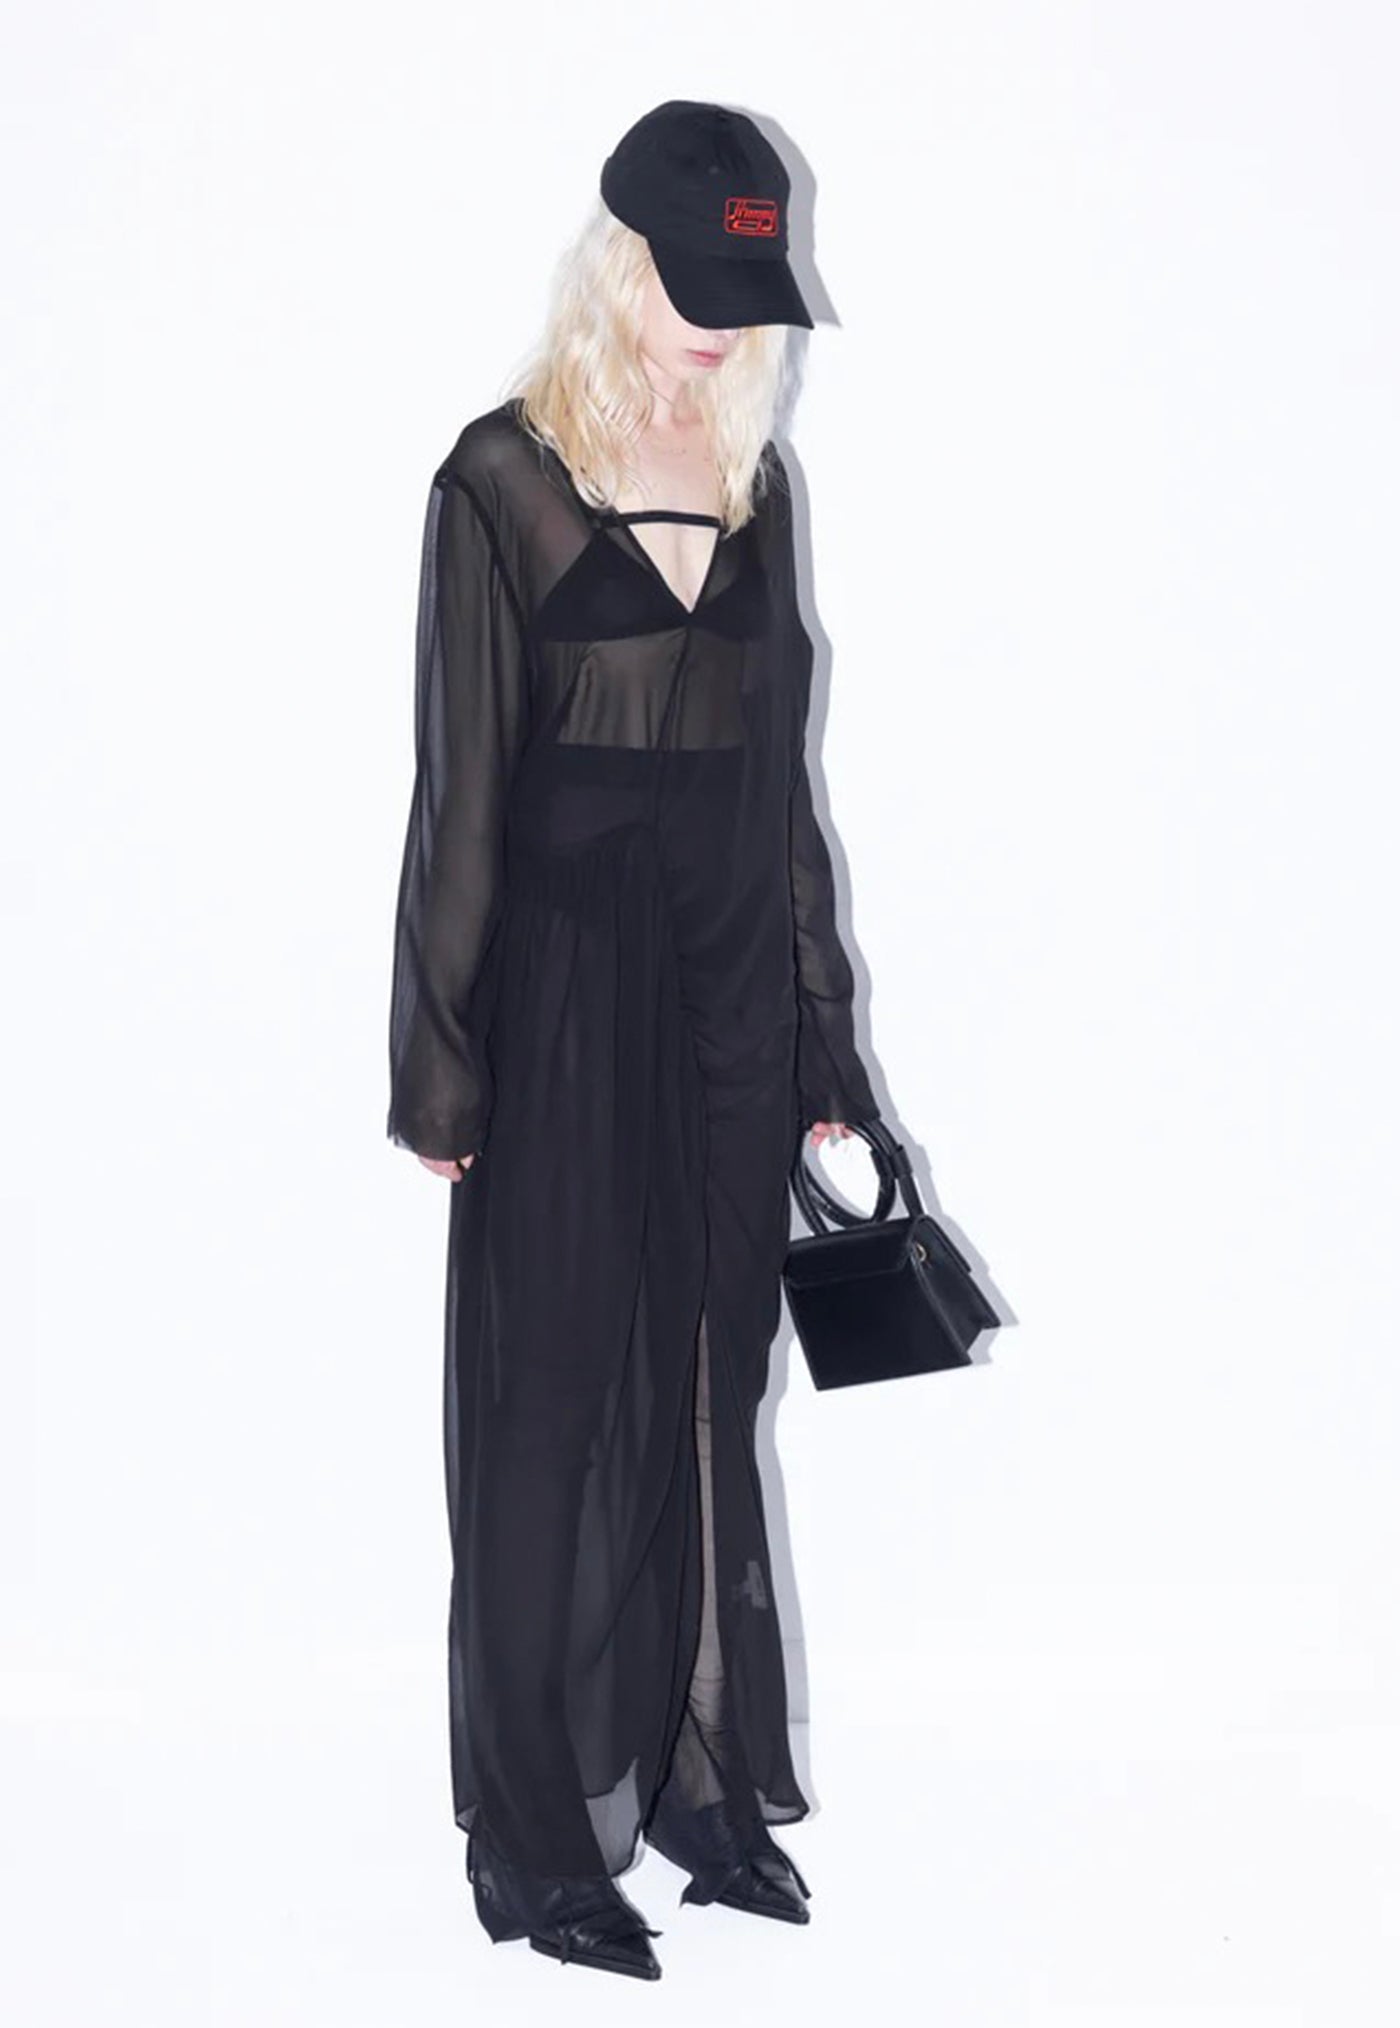 Limelight Dress - Black sold by Angel Divine